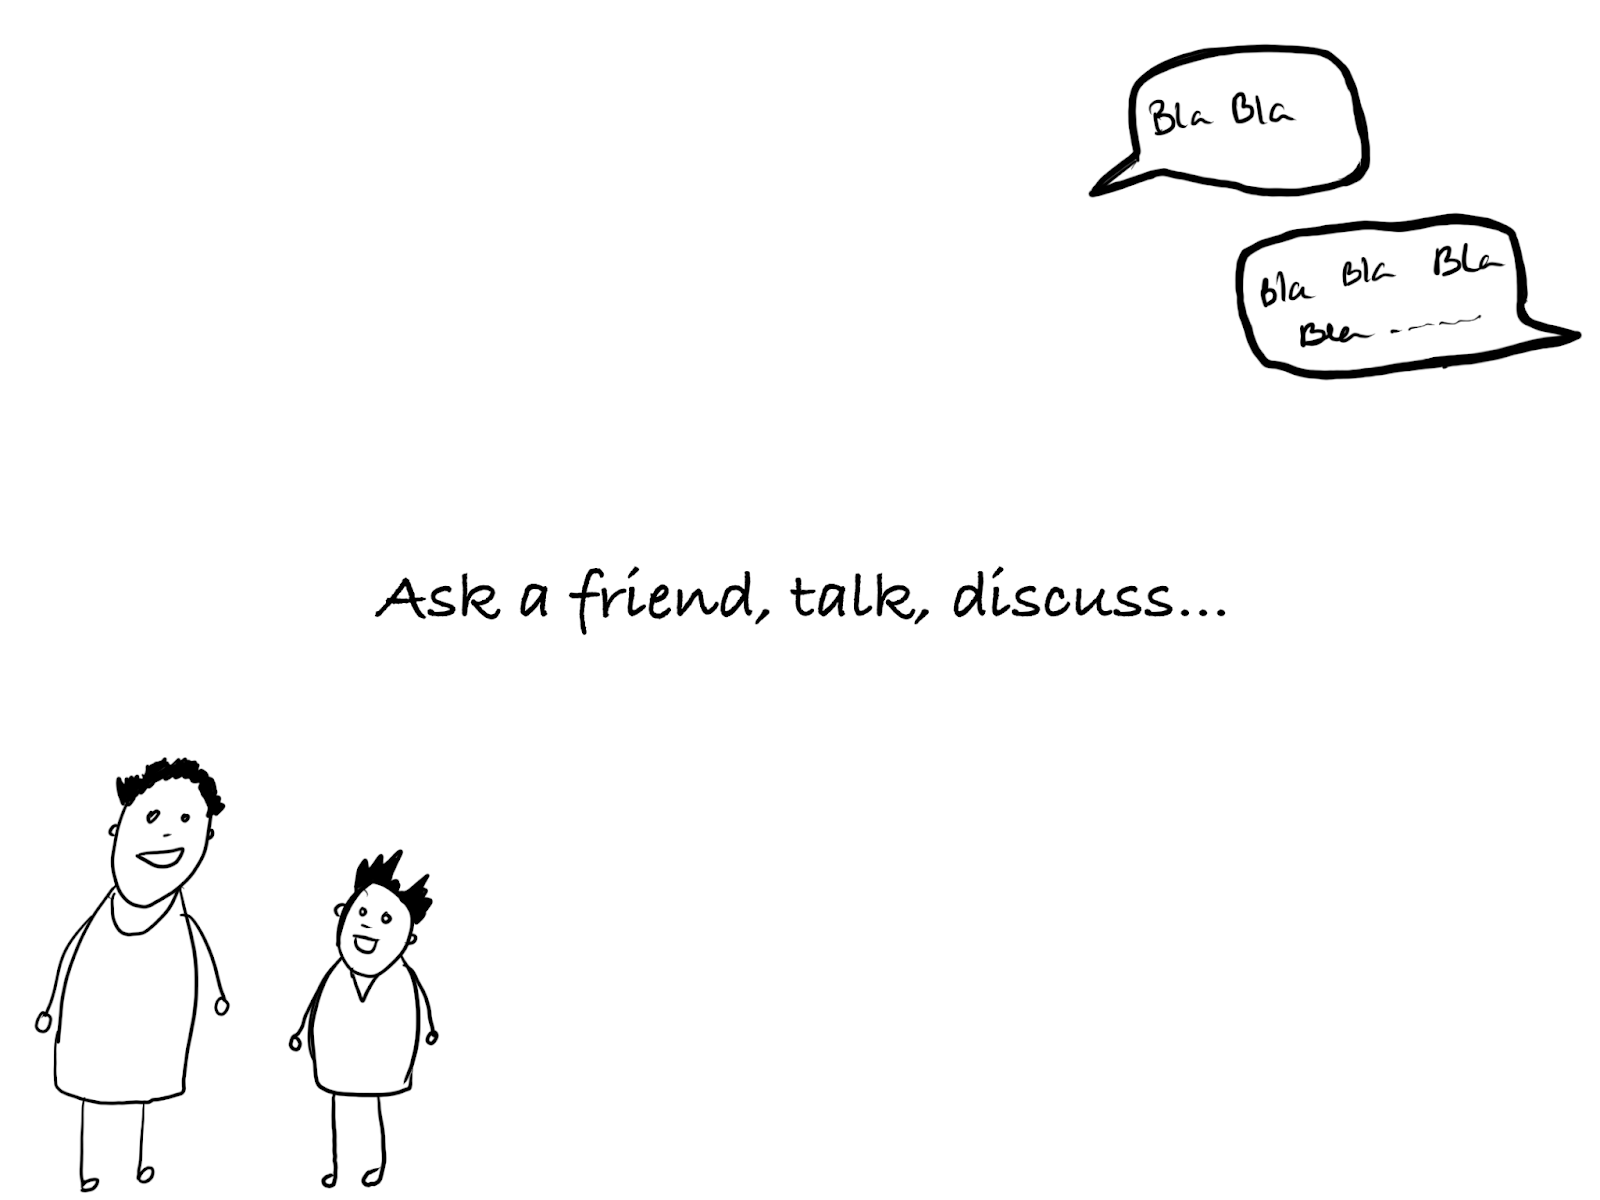 Bir arkadaşa sor